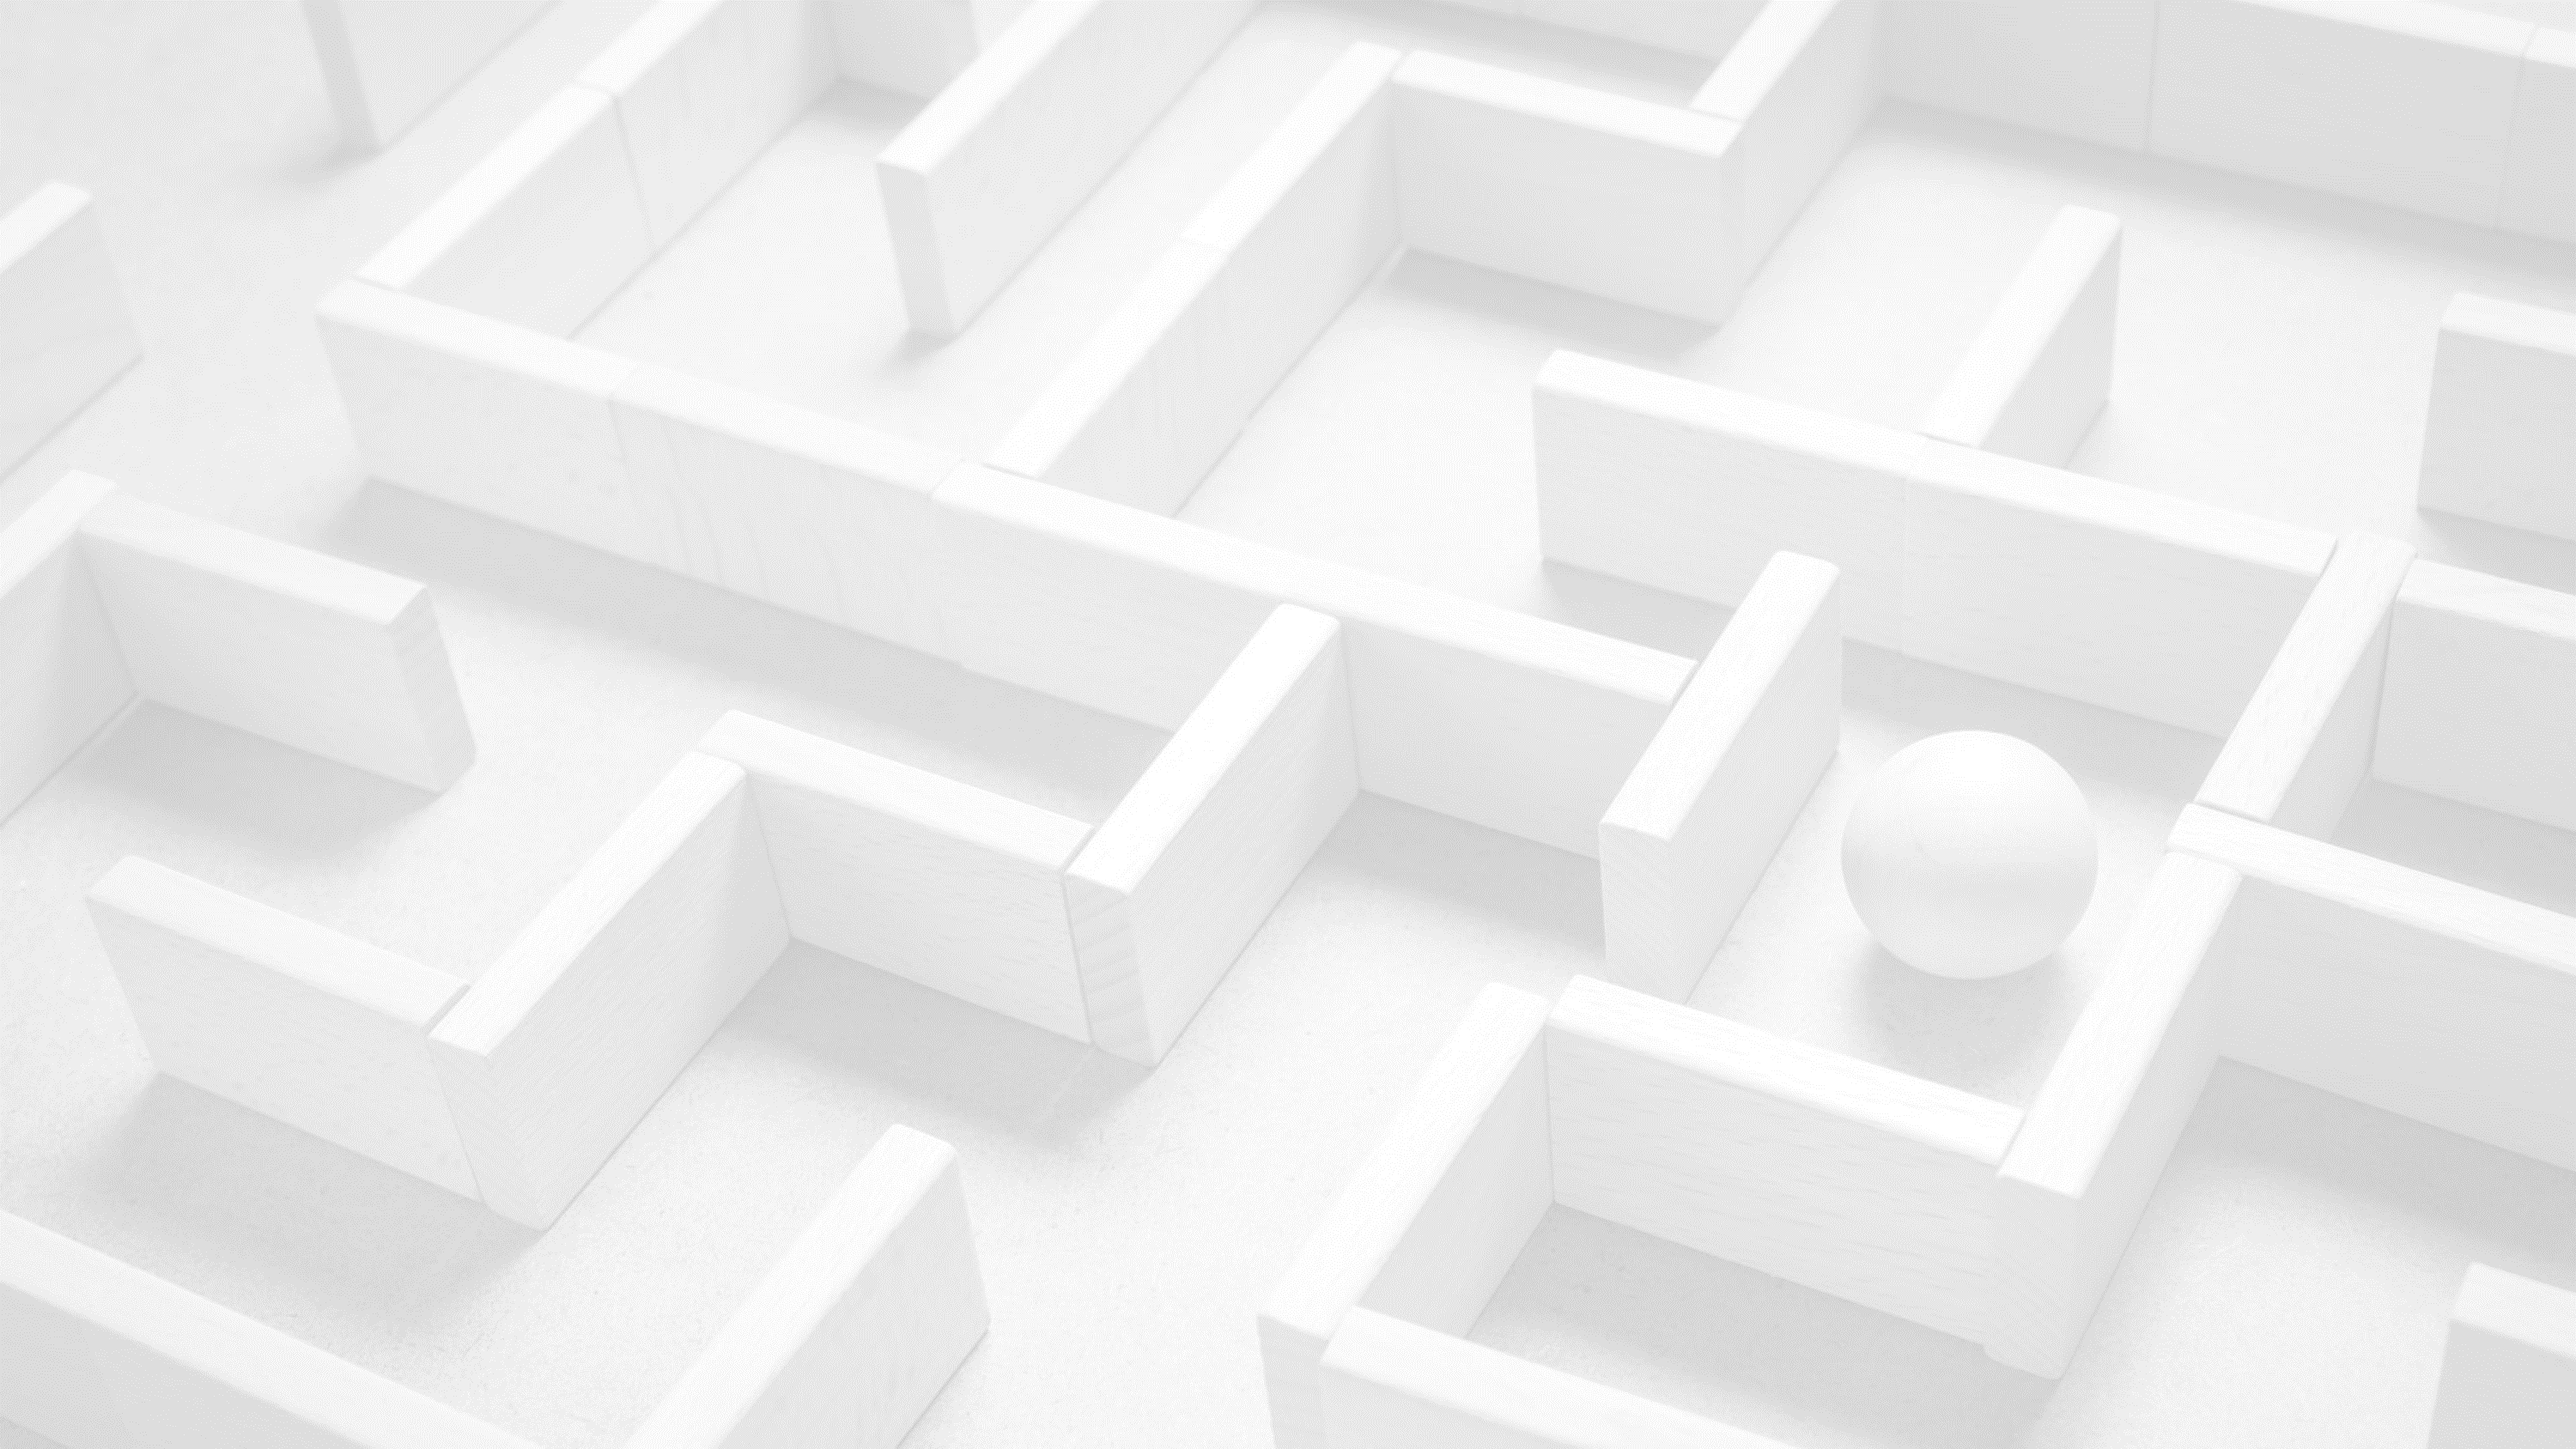 Light maze background image